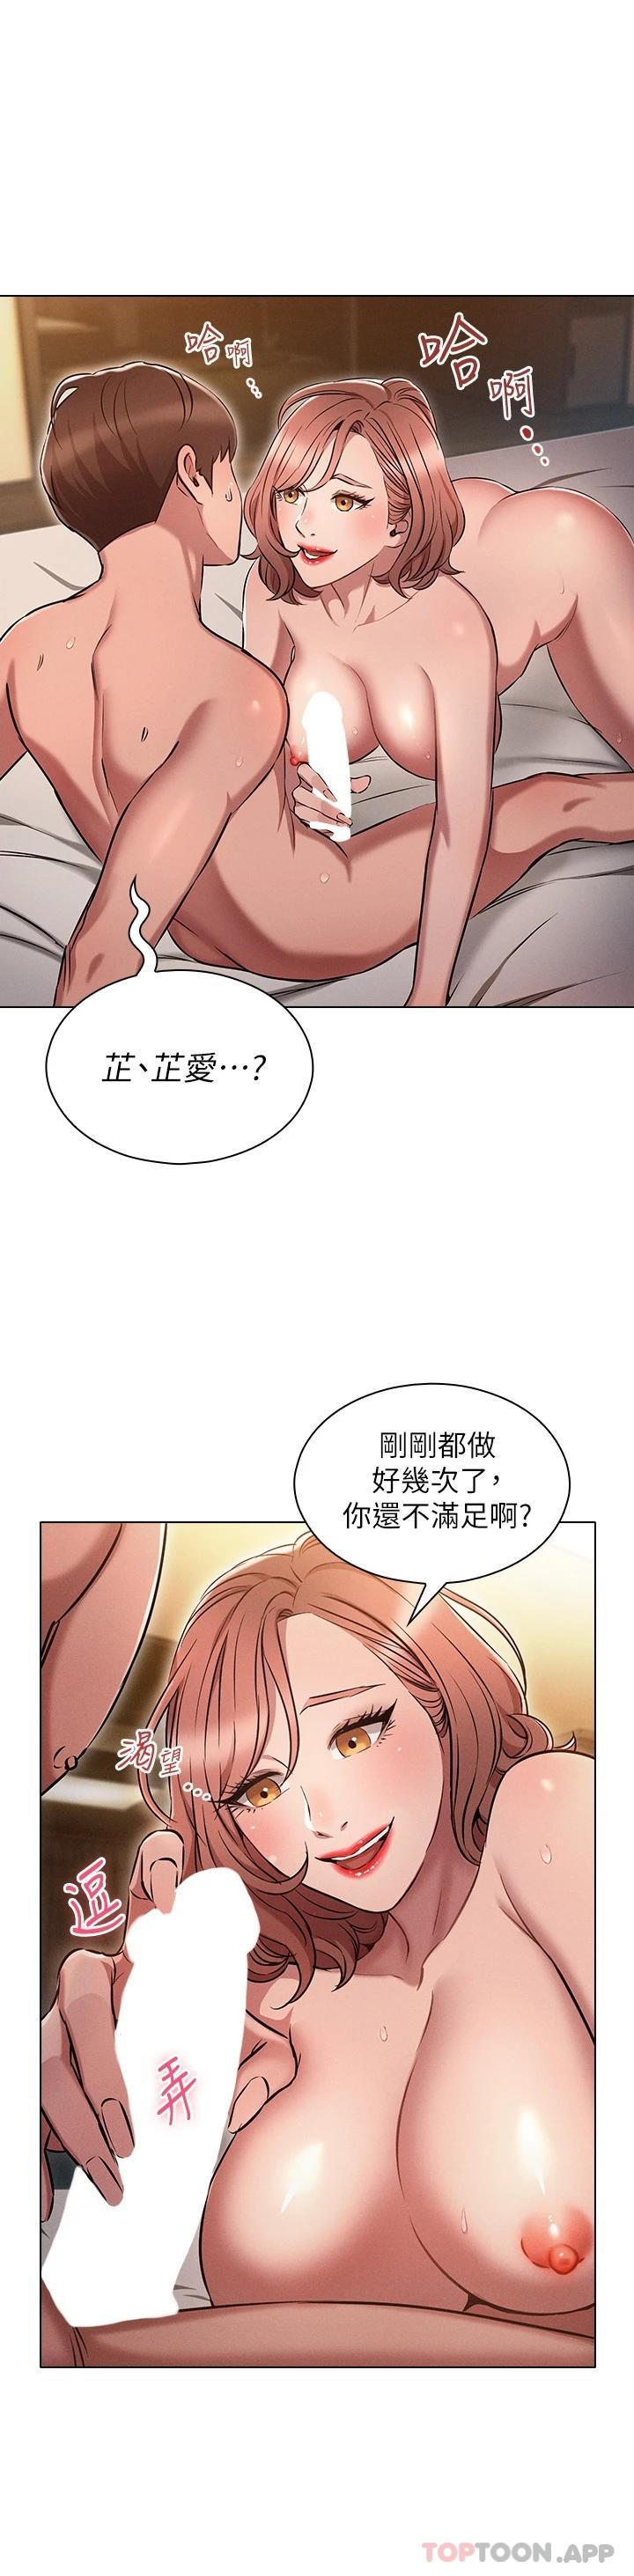 韩国污漫画 魯蛇的多重宇宙 第5话 期待你的「茎」喜 32